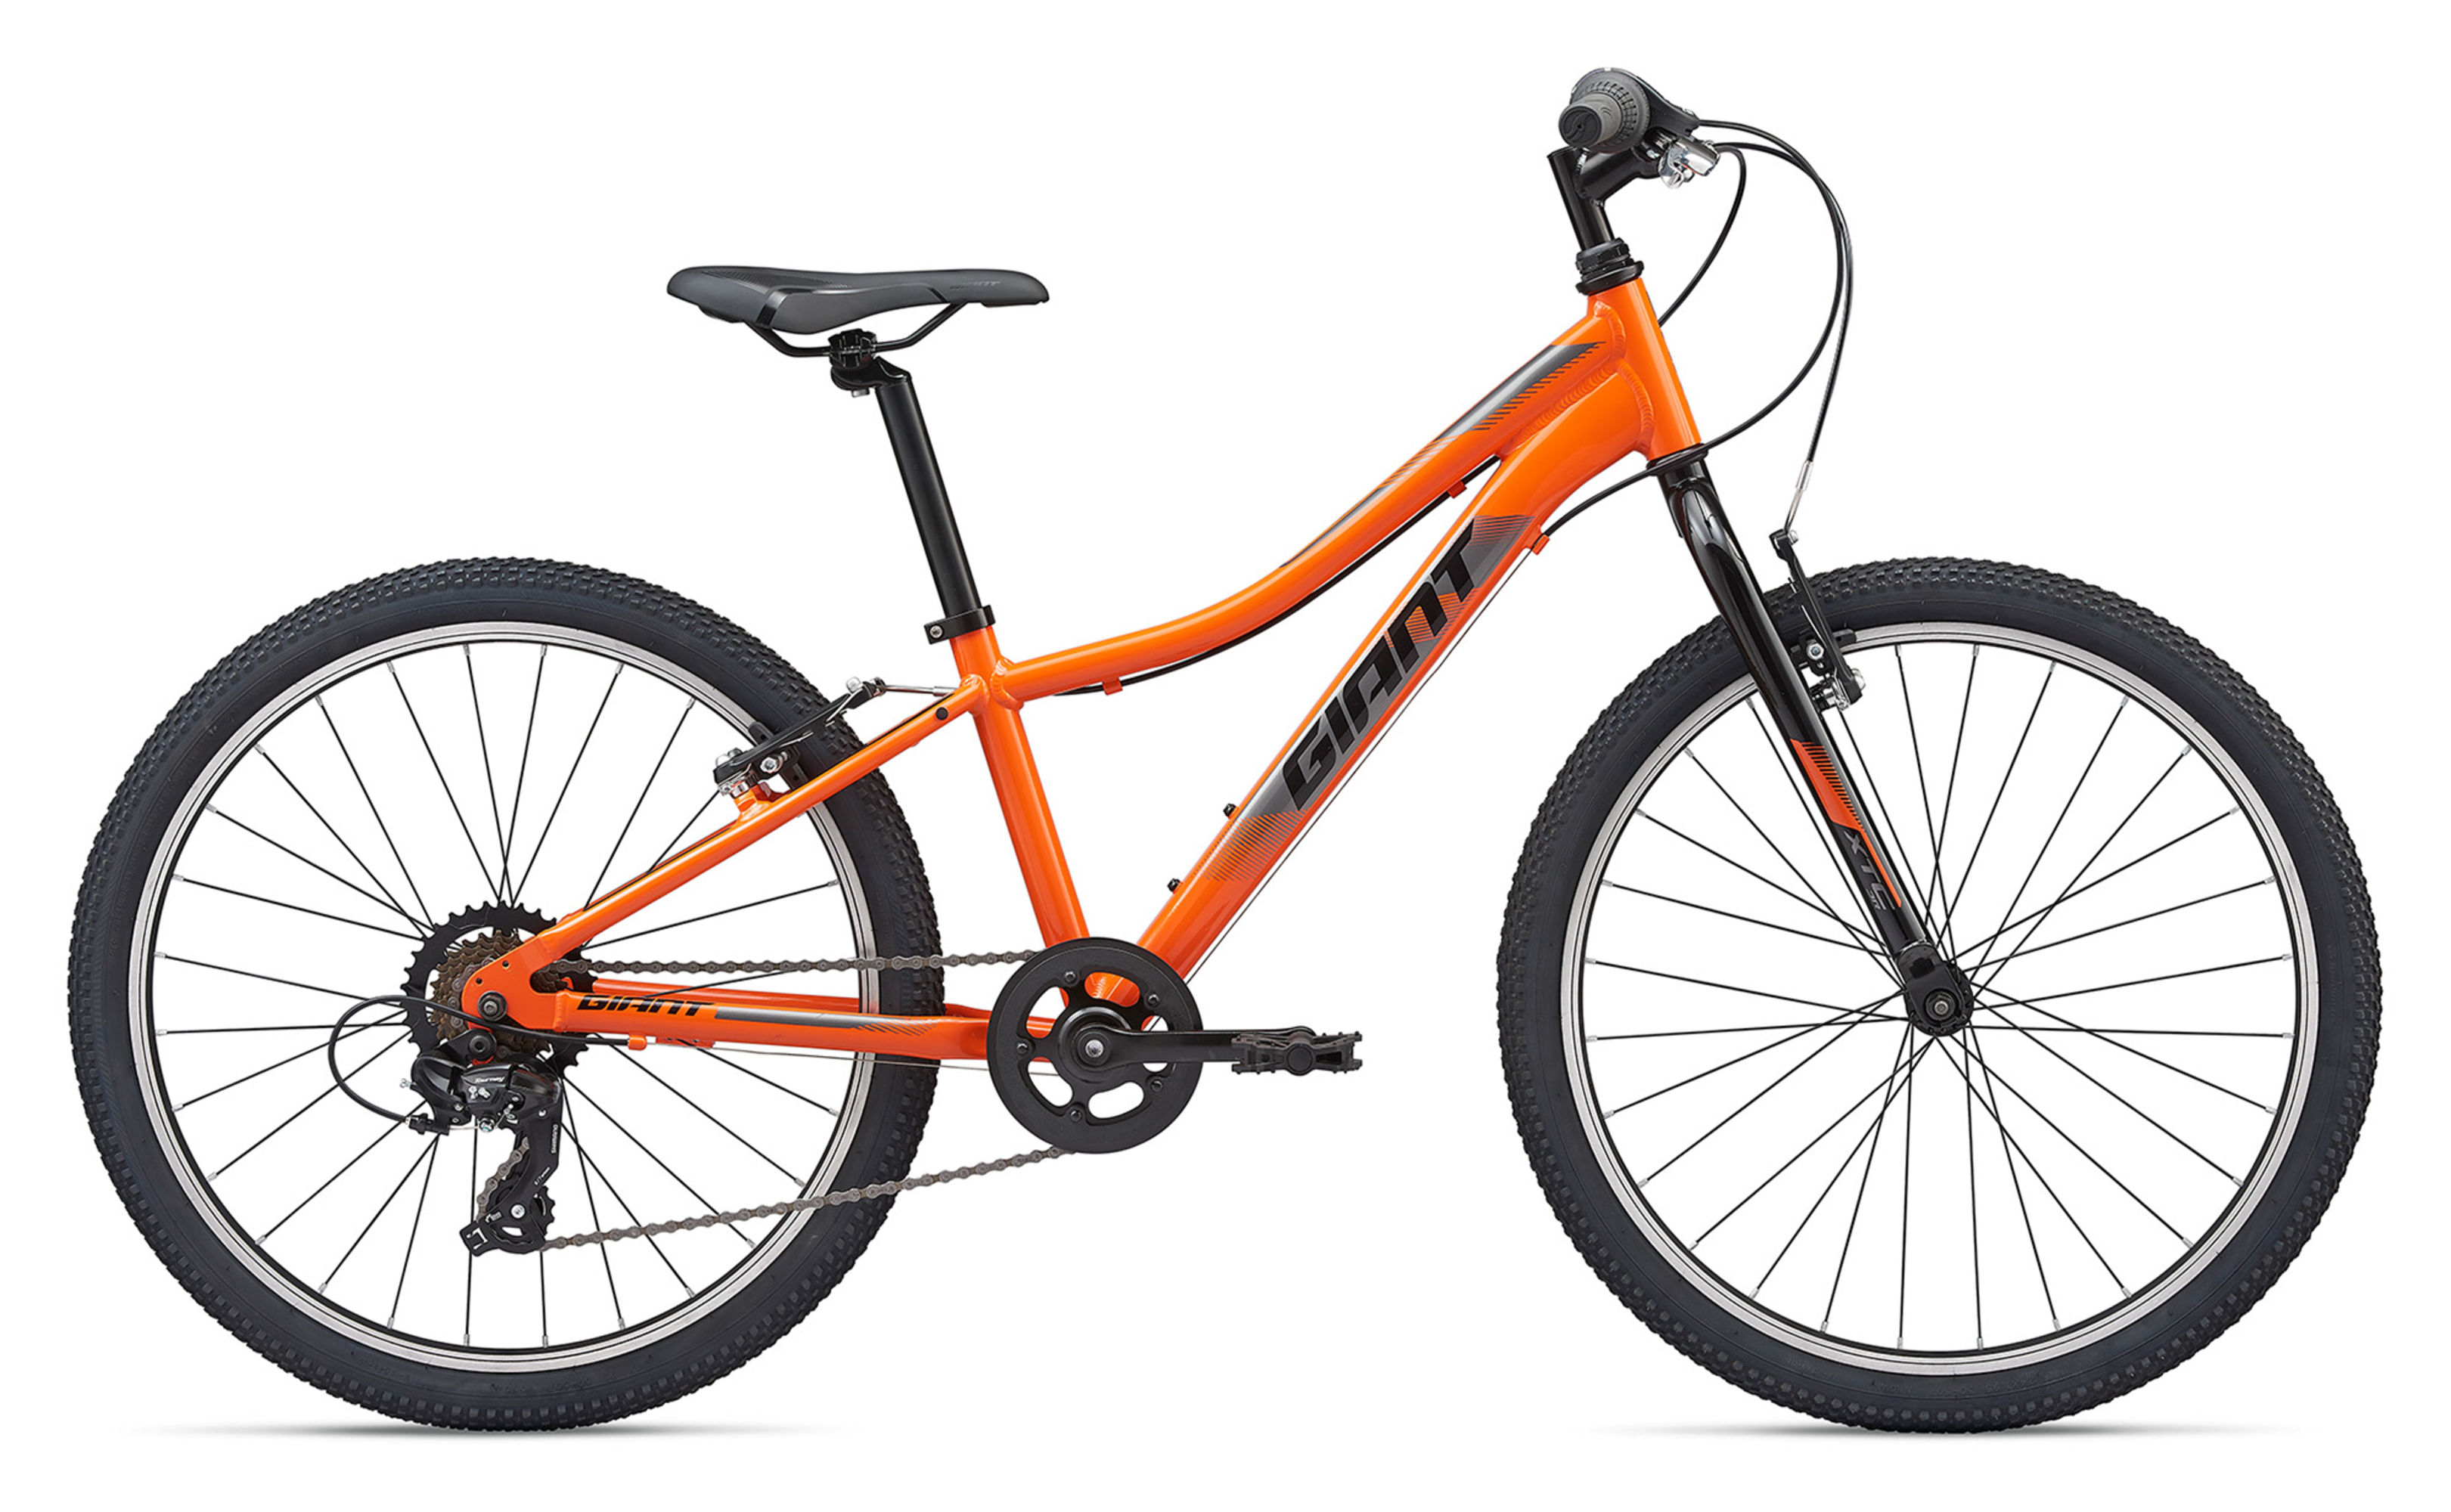  Отзывы о Подростковом велосипеде Giant XTC Jr 24 Lite 2020